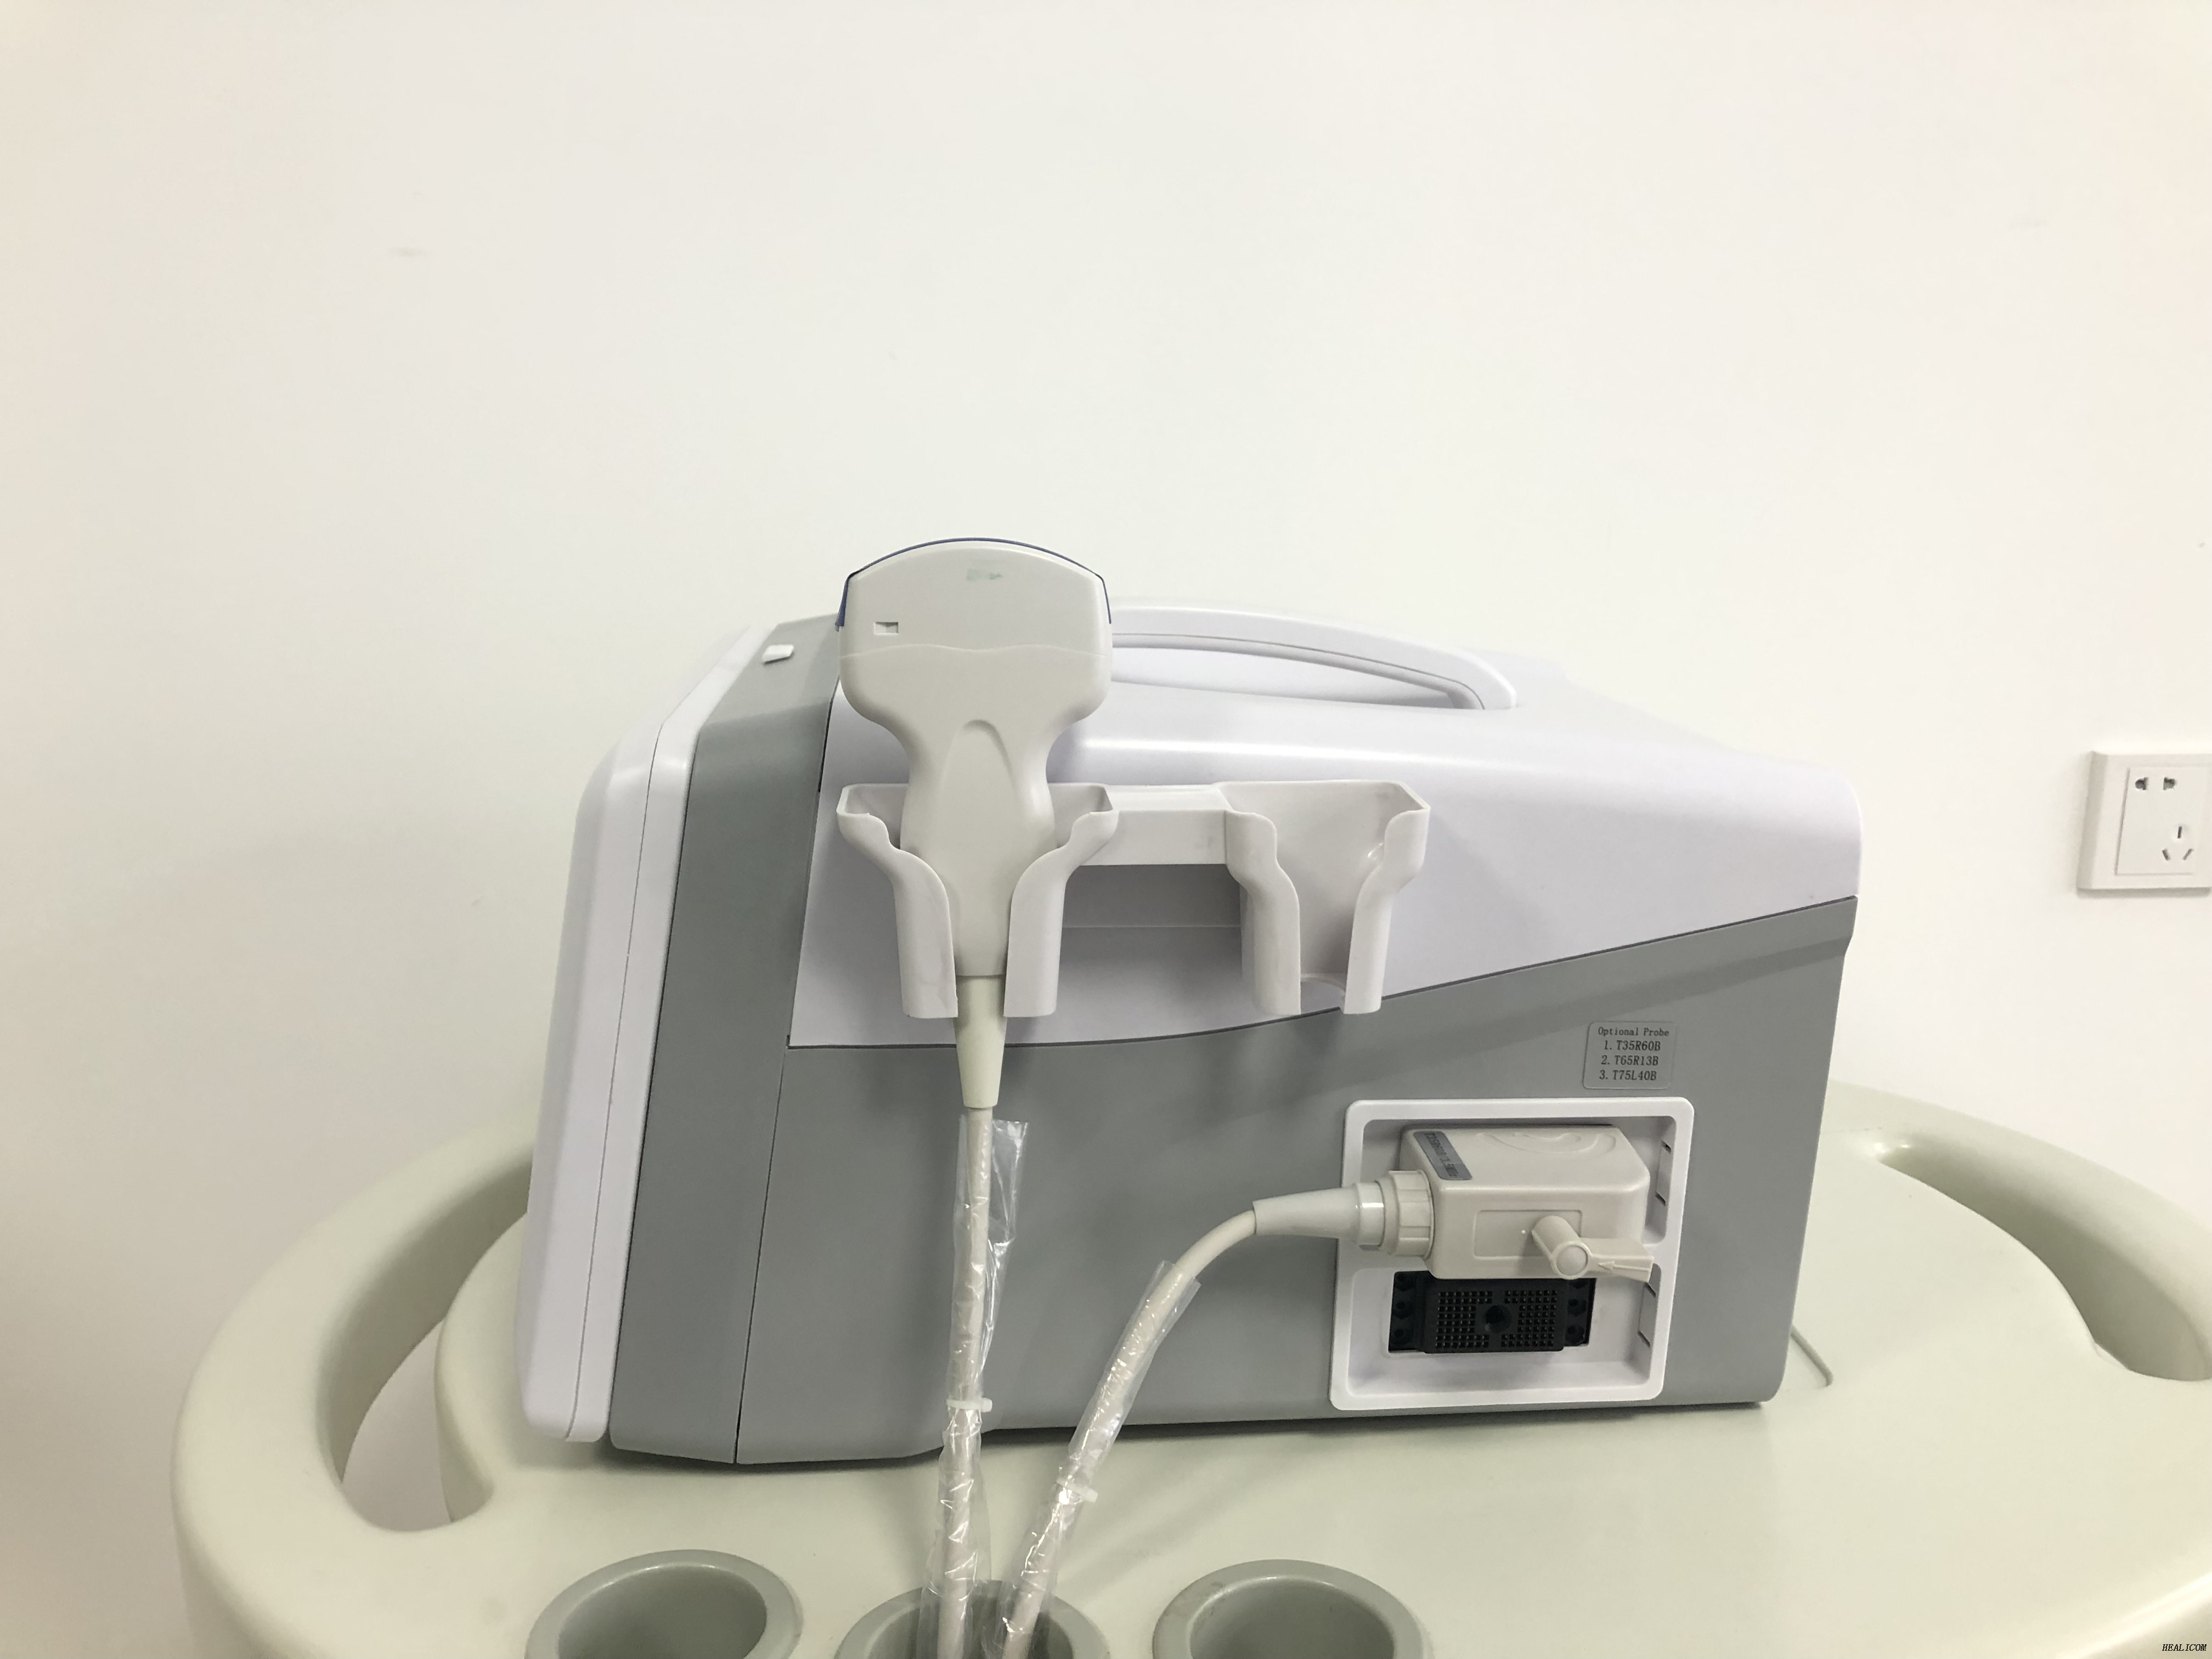 Equipo médico escáner de ultrasonido de modo portátil ultrasónico HBW-2